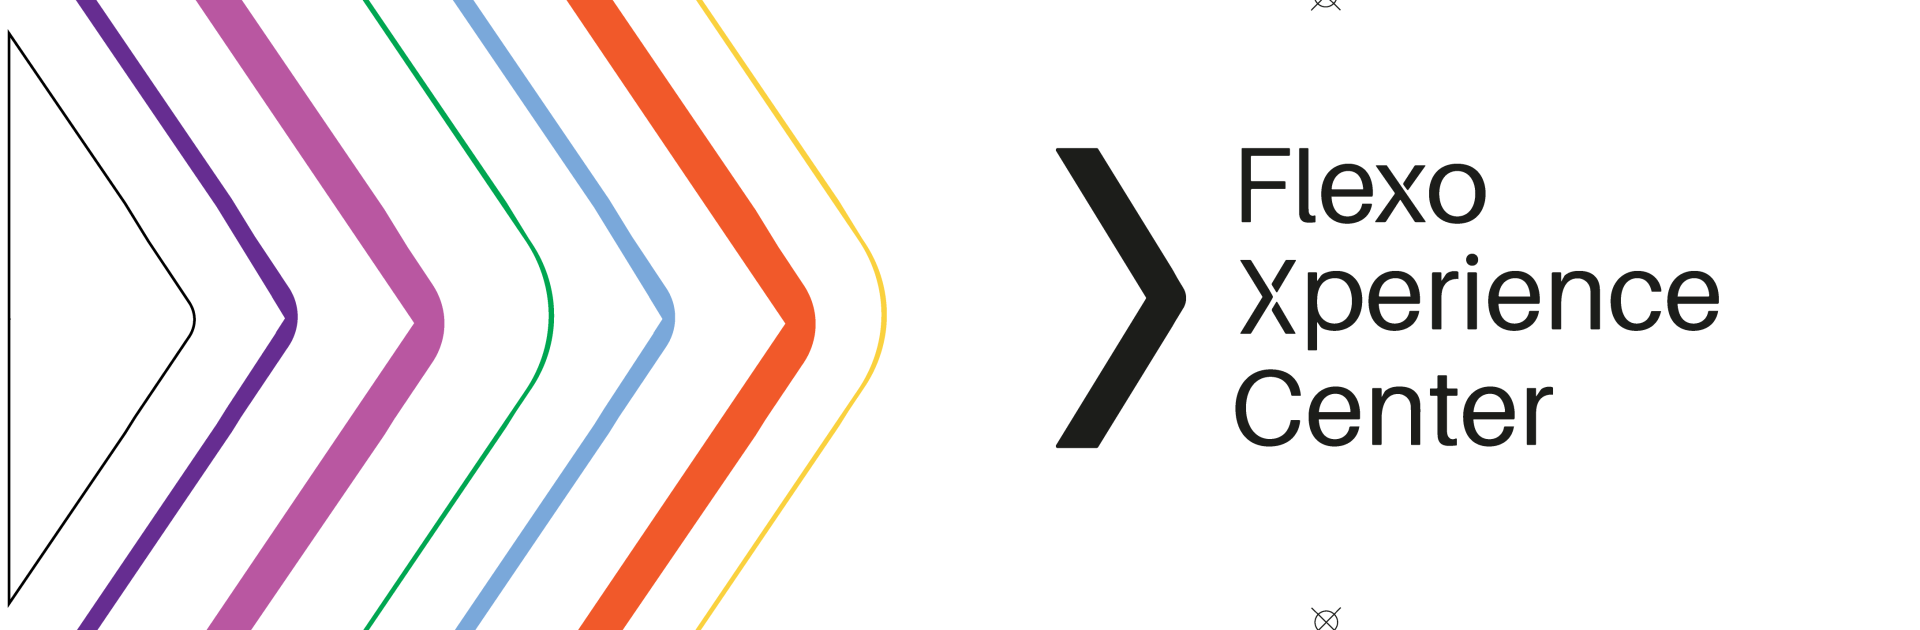 The Flexo Xperience Center